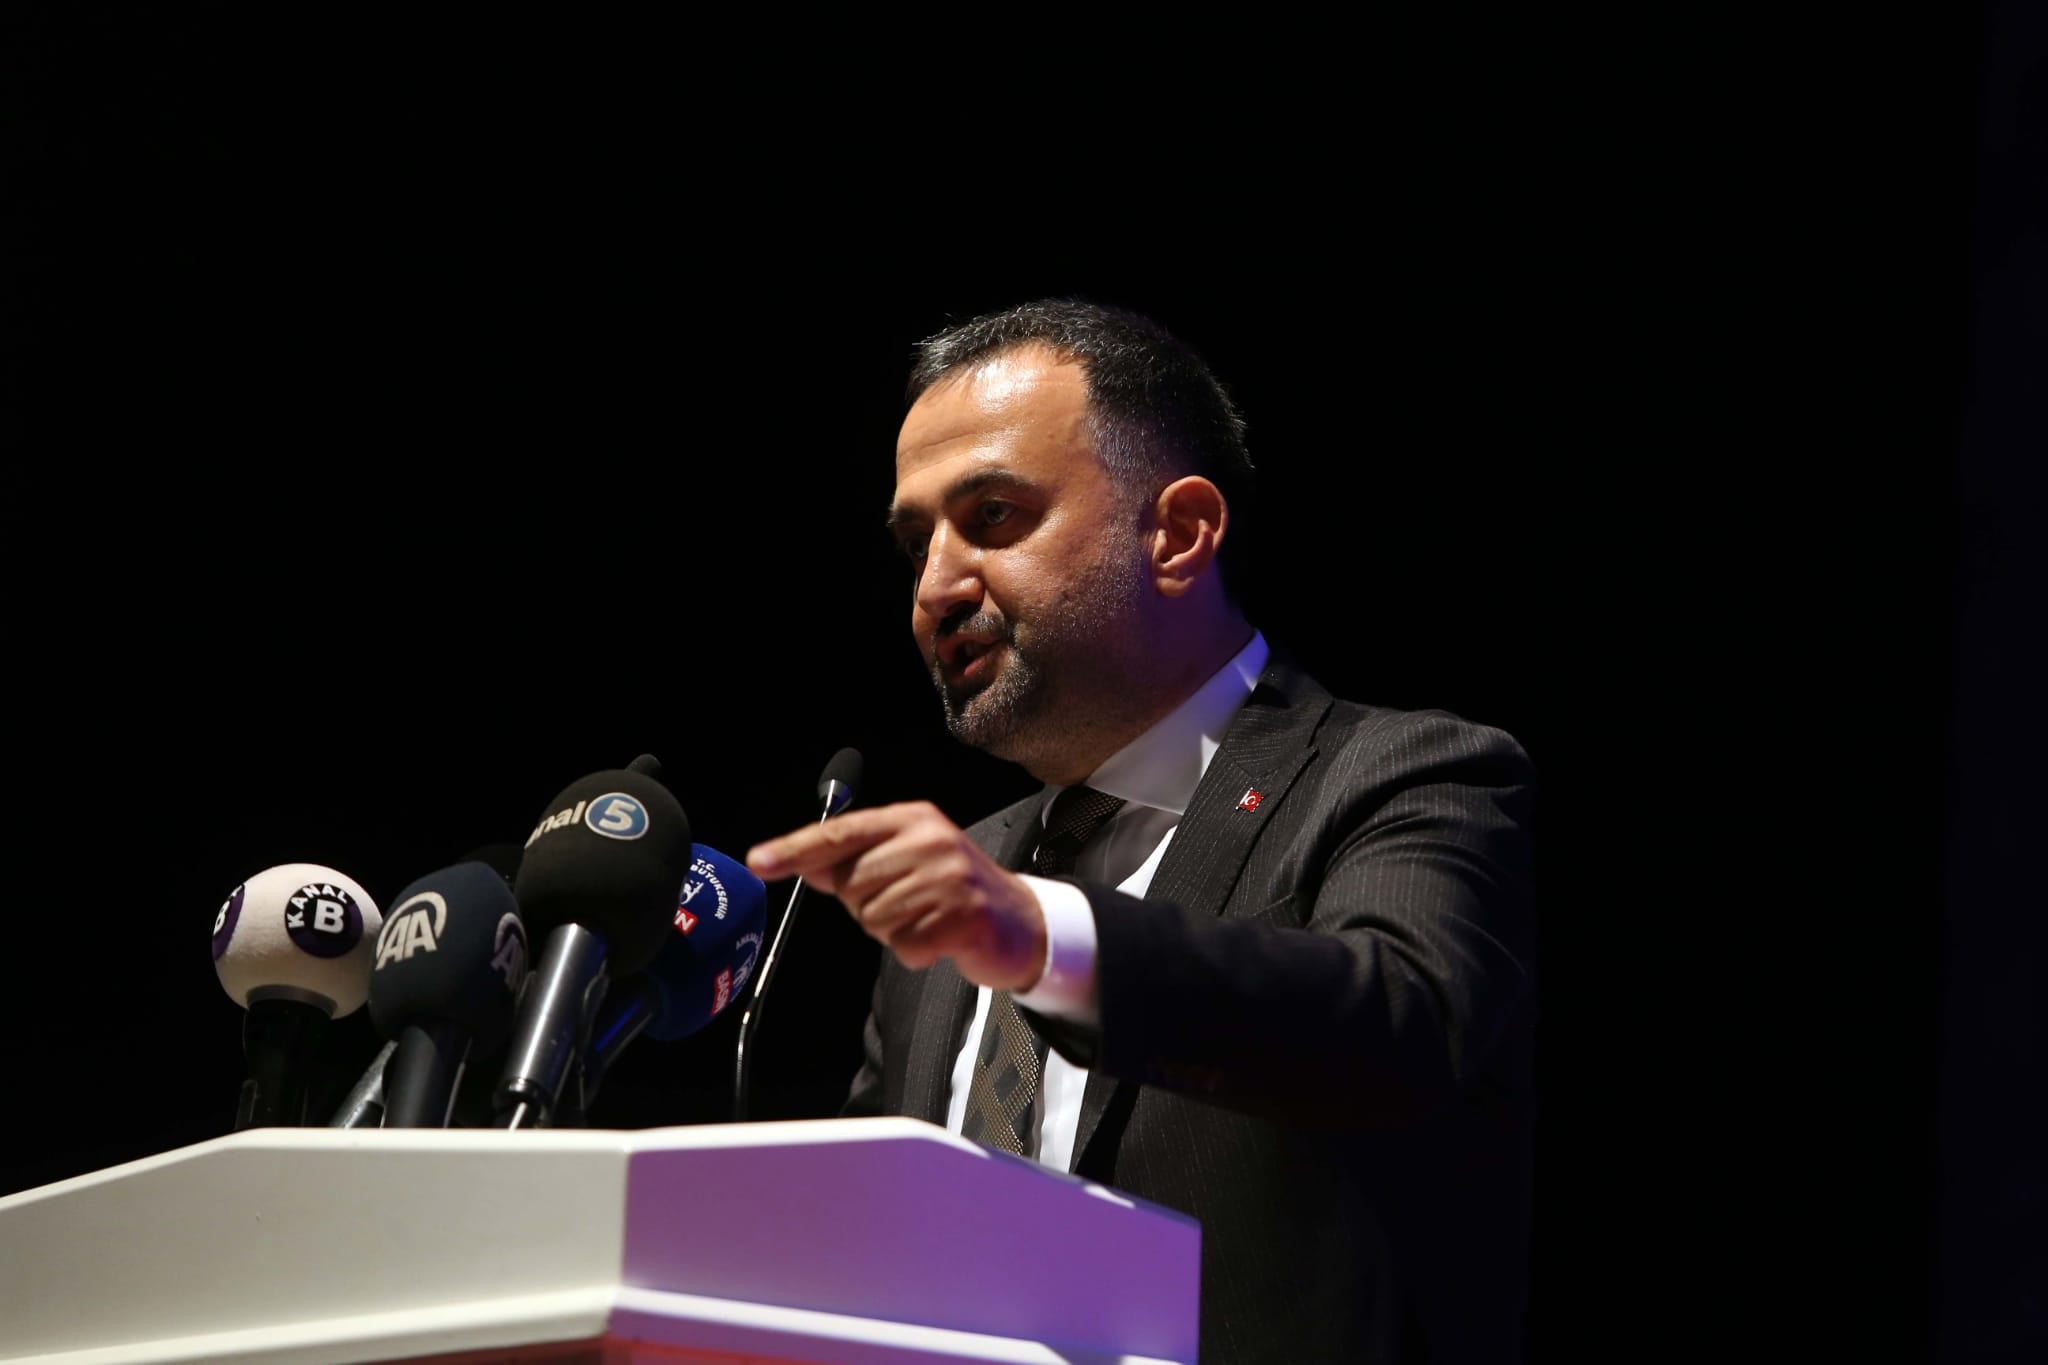 Rizeli Başkan, Ankara Kent Konseyi Başkanlığına Seçilerek yeniden Güven Tazeledi